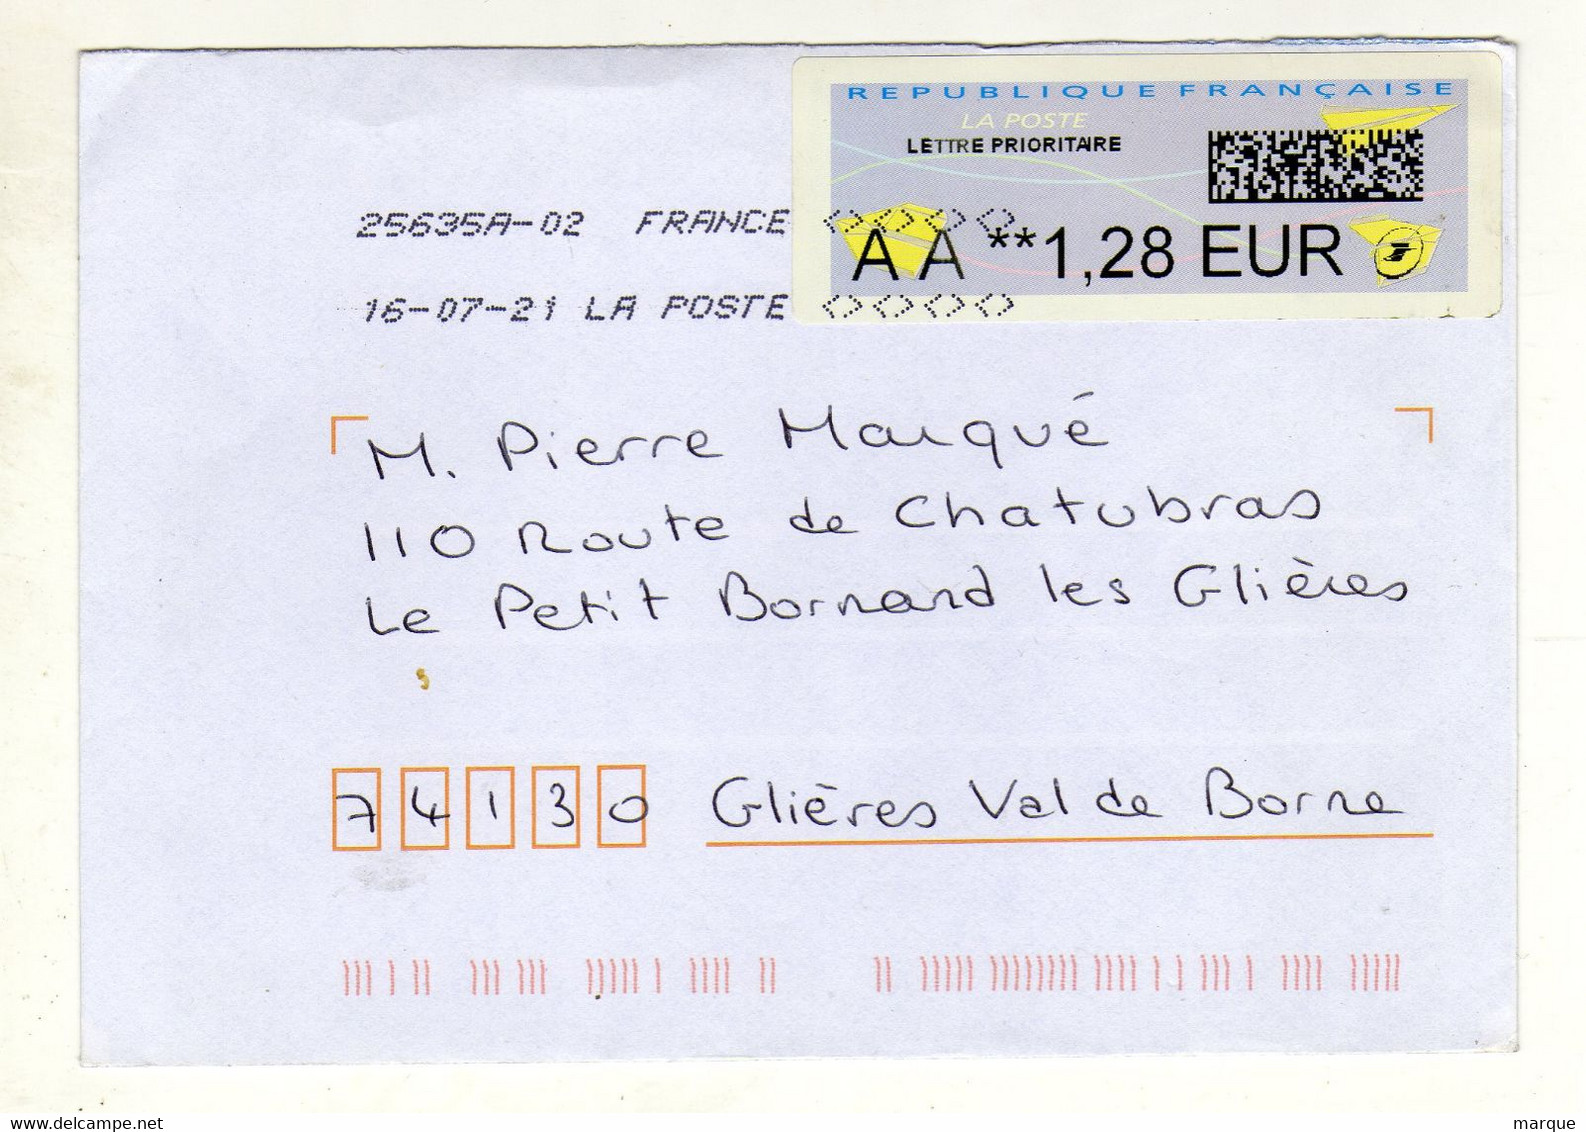 Enveloppe FRANCE Avec Vignette D' Affranchissement Lettre Prioritaire Oblitération LA POSTE 25635A-02 16/07/2021 - 2010-... Viñetas De Franqueo Illustradas